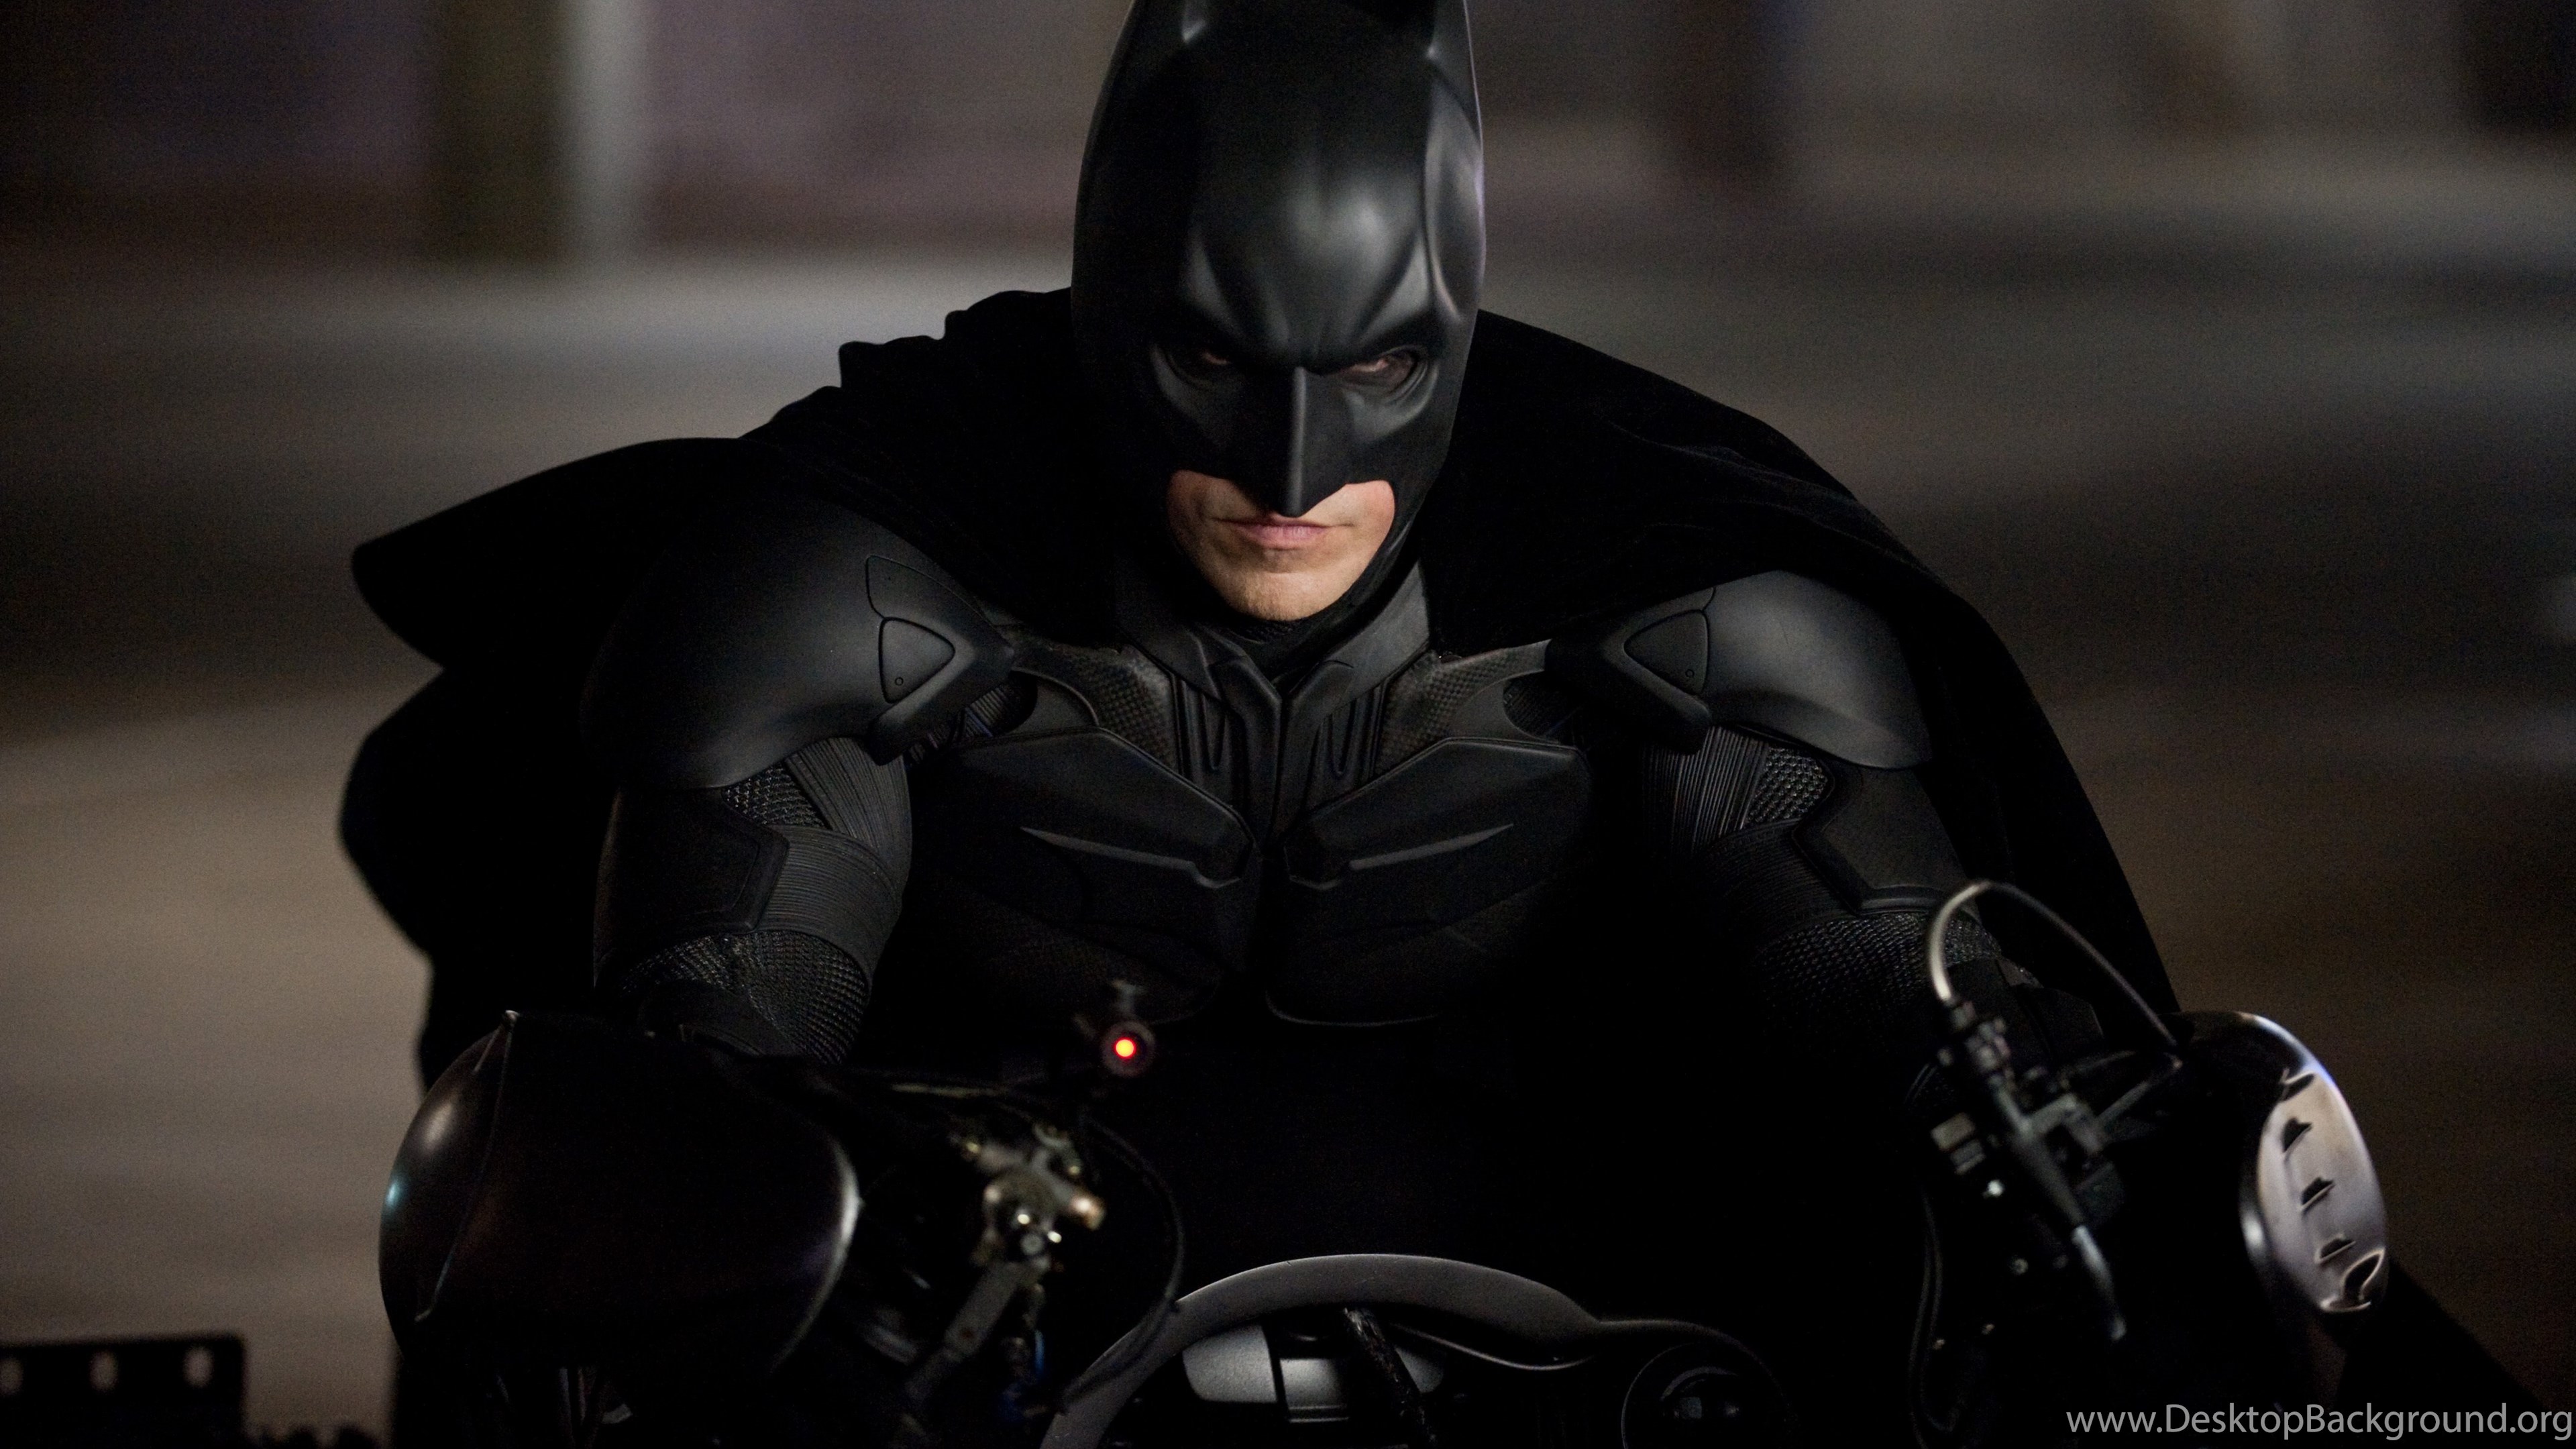 The Dark Knight Rises HD Wallpaper Batman